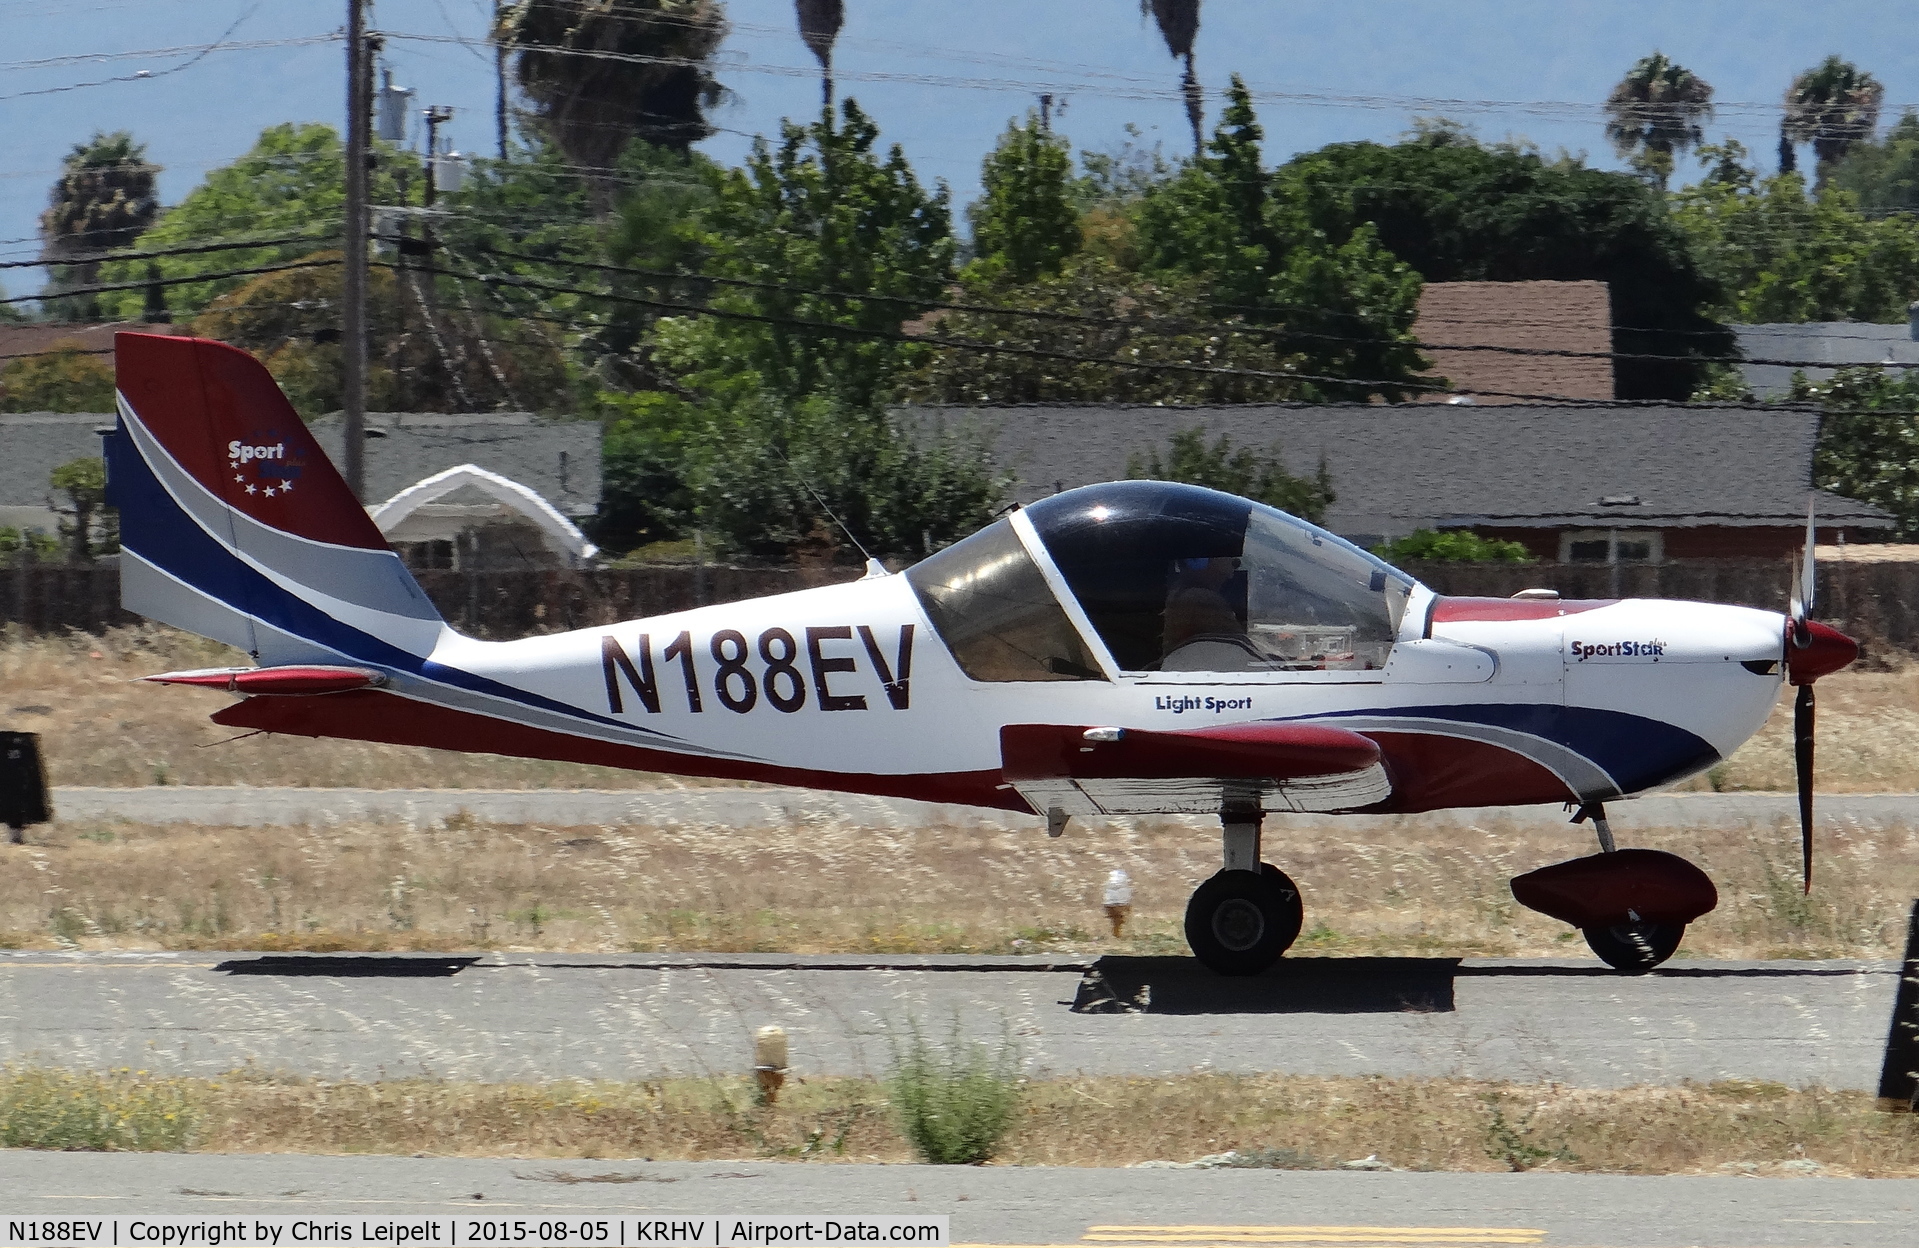 N188EV, 2007 Evektor-Aerotechnik SPORTSTAR PLUS C/N 20071008, A locally based 2007 Sportstar Plus landing runway 31R at Reid Hillview Airport, CA.